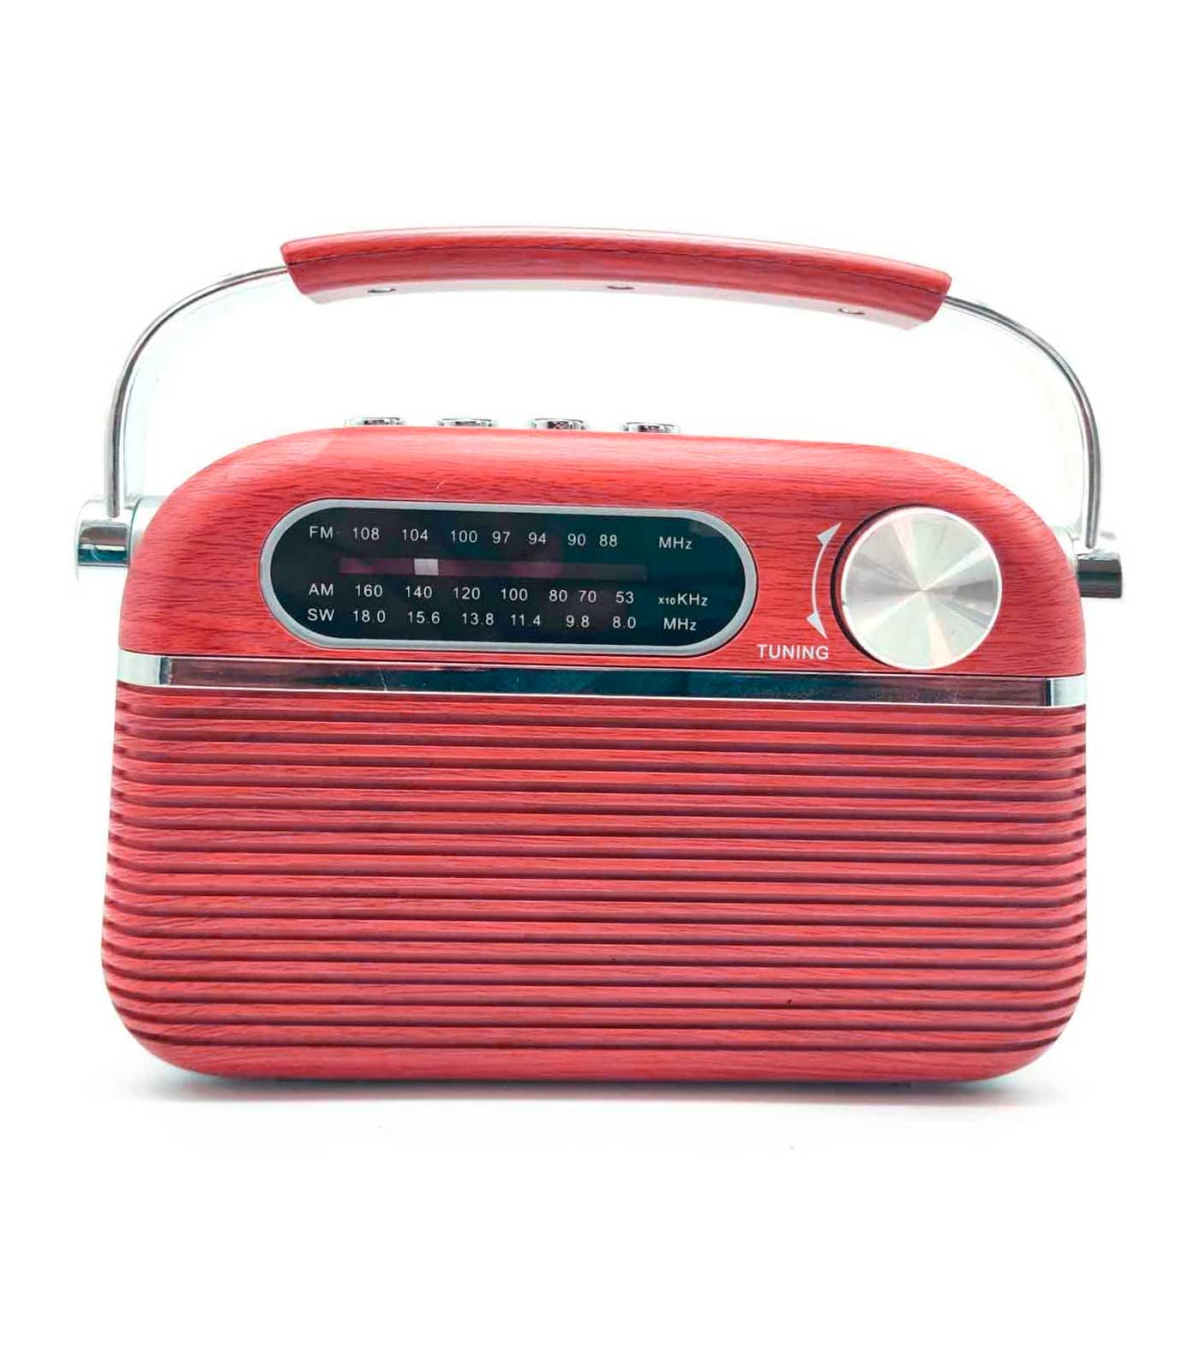 Tradineur - Radio vintage POP con diseño clasico - Sintonizador